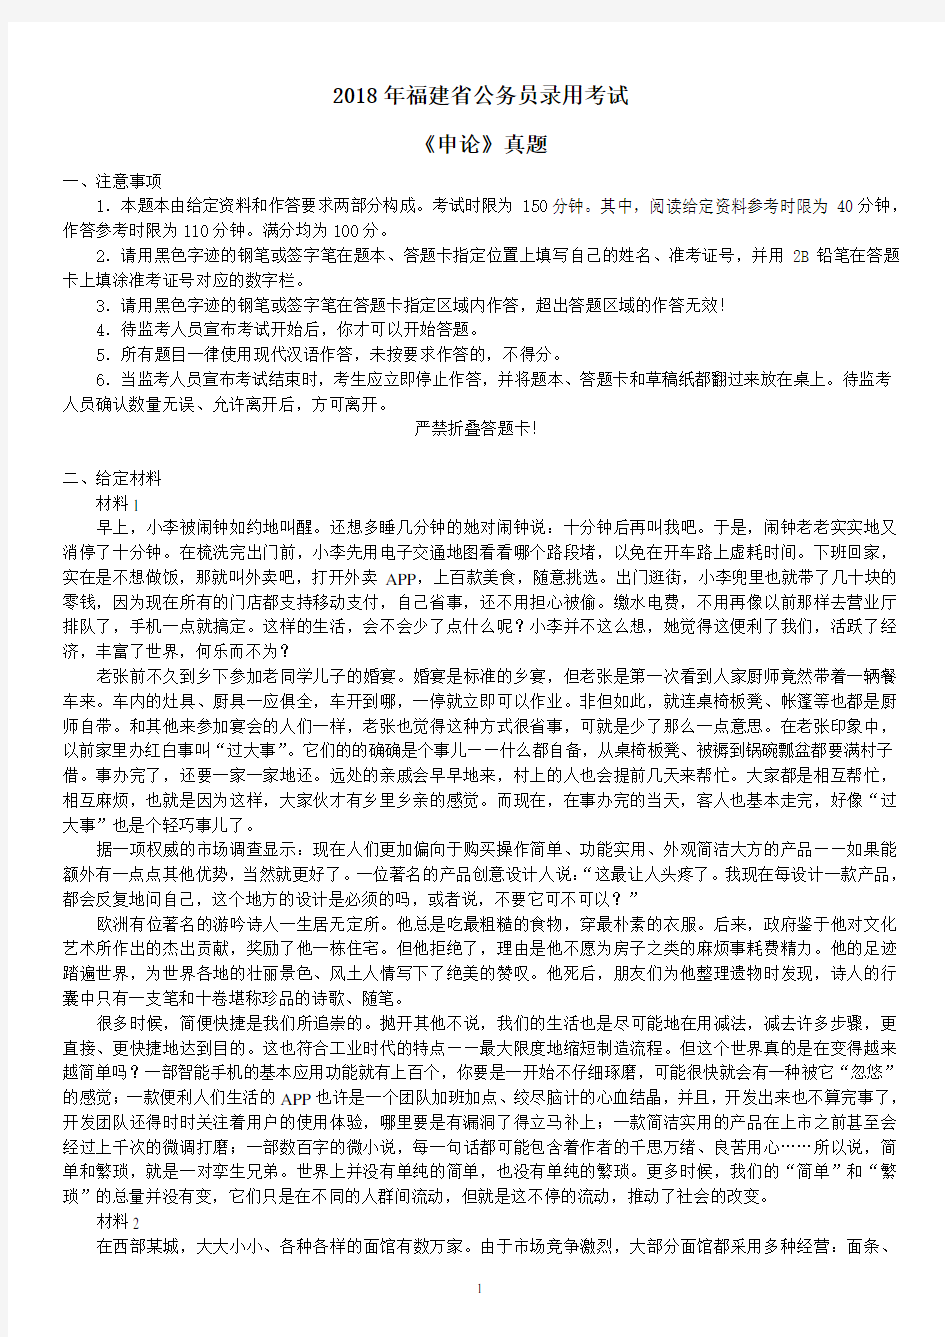 2018年福建省公务员录用考试《申论》真题及标准答案